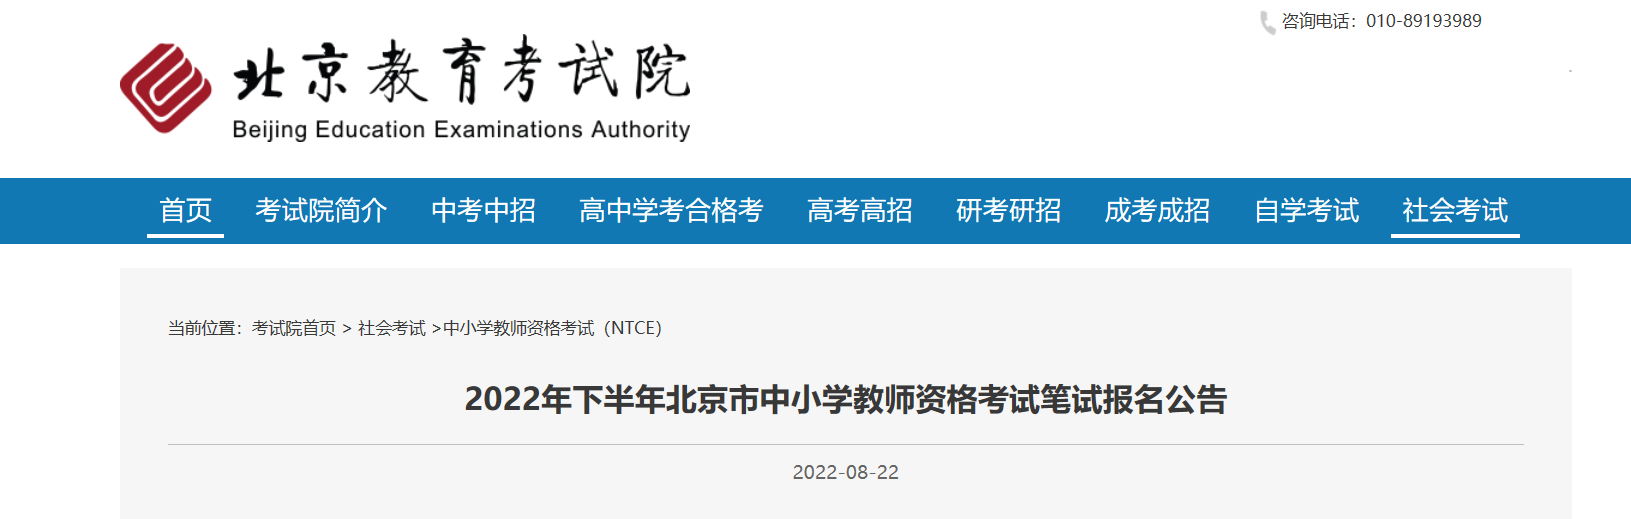 2022下半年北京中小学教师资格笔试考试报名时间、条件及入口【9月2日-9月5日】